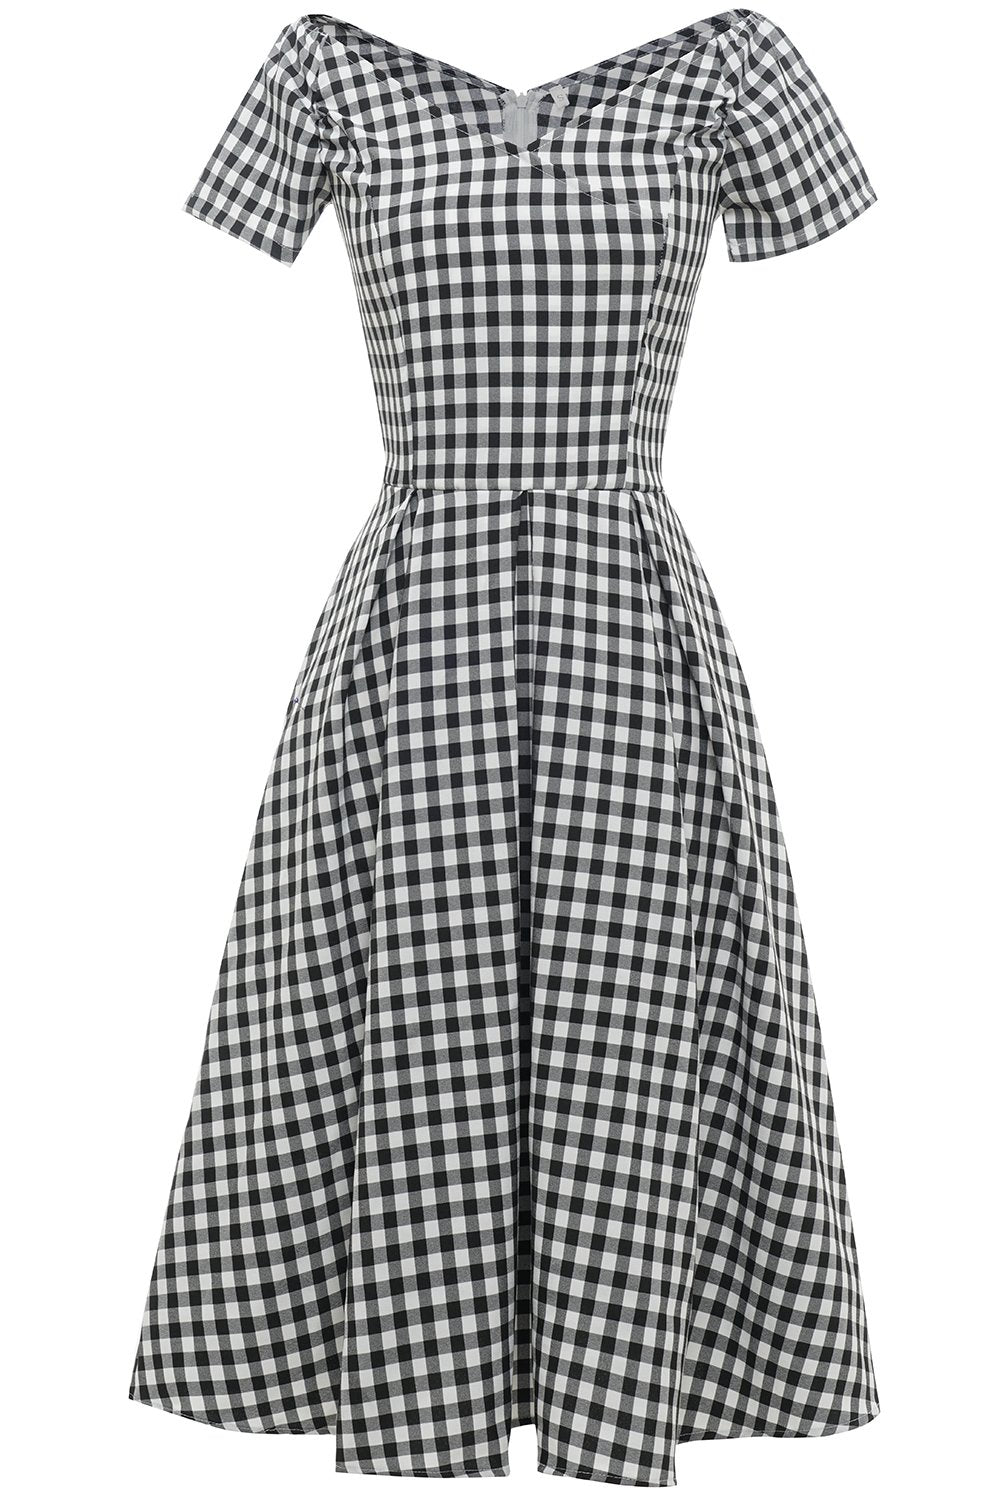 Vestido preto e branco xadrez vintage de 1950